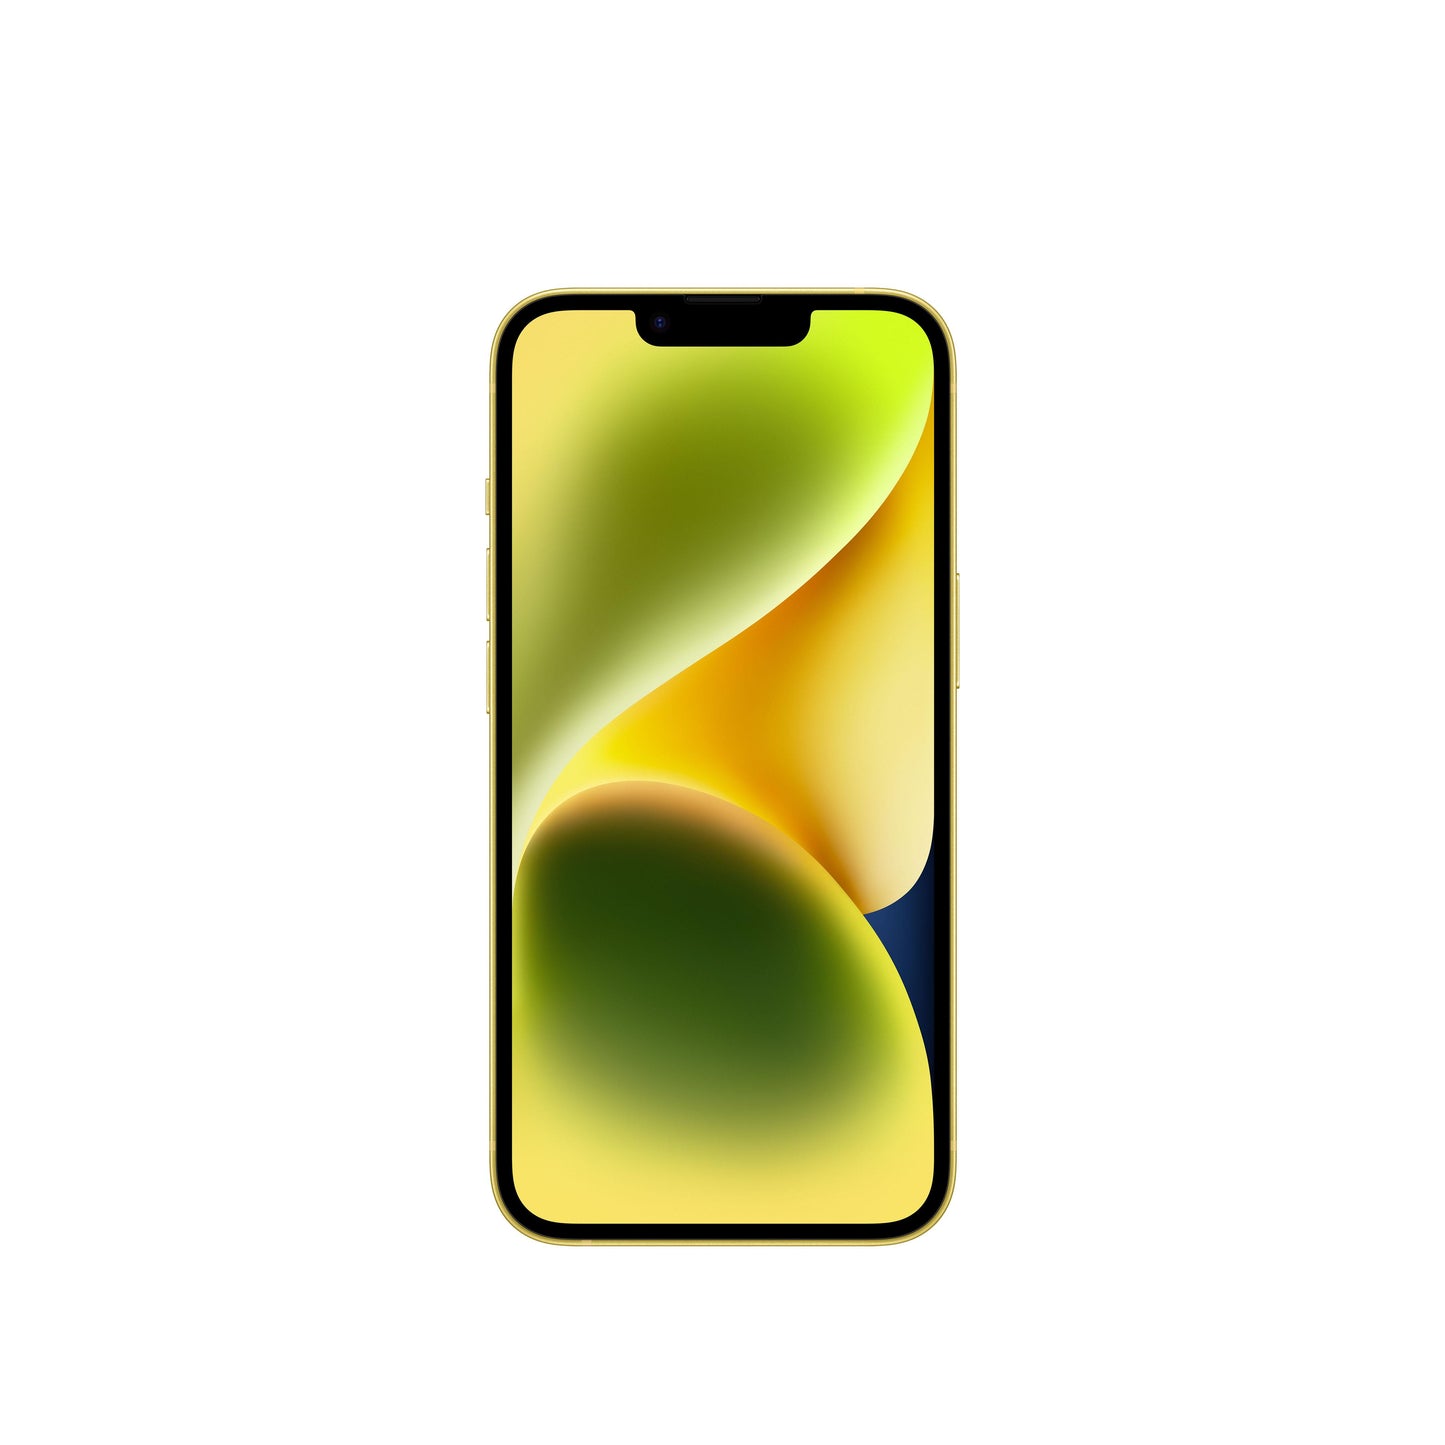 iPhone 14 128 GB en amarillo - Rossellimac